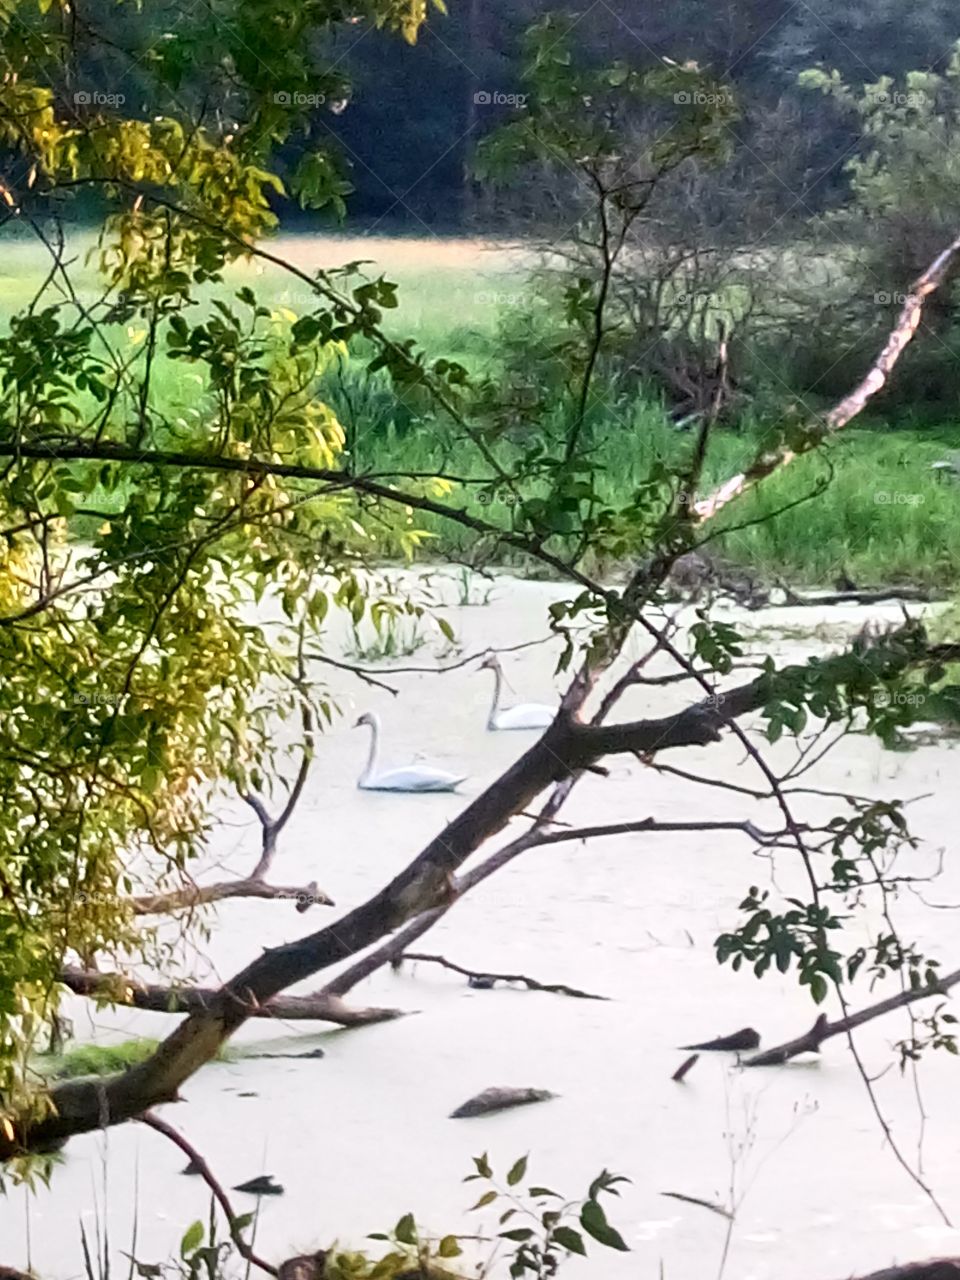 polish nature,  at the river pool, swans